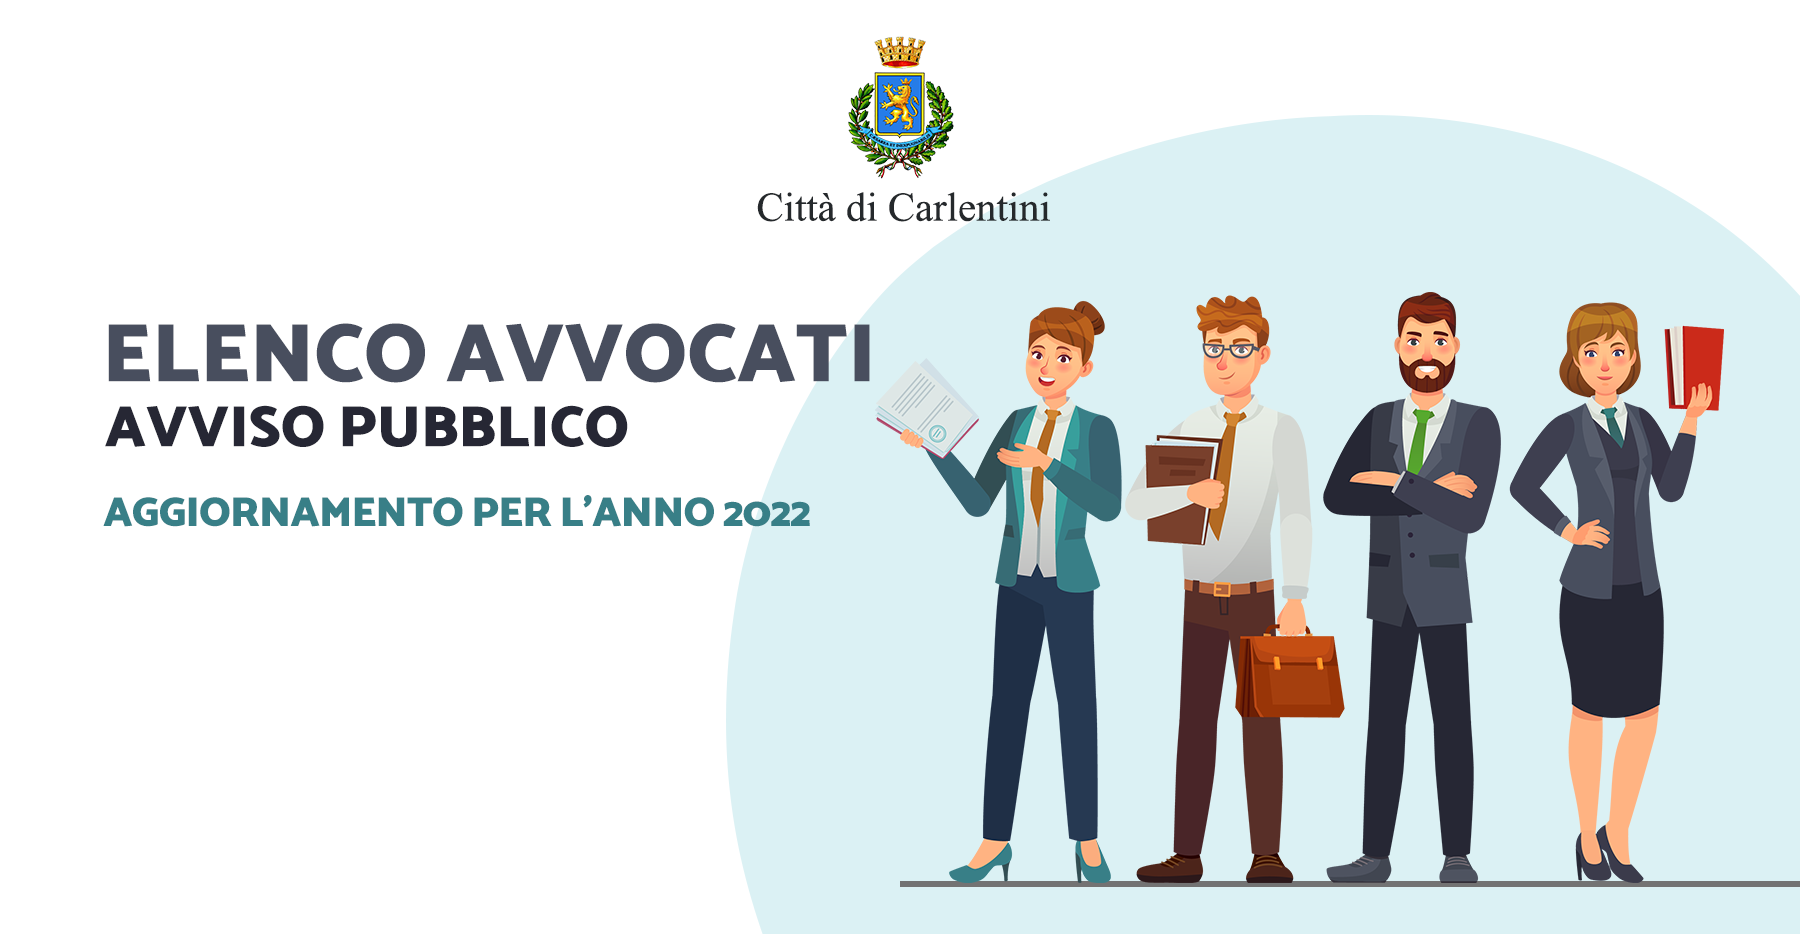 Elenco comunale avvocati: aggiornamento per il conferimento di incarichi per l’anno 2022